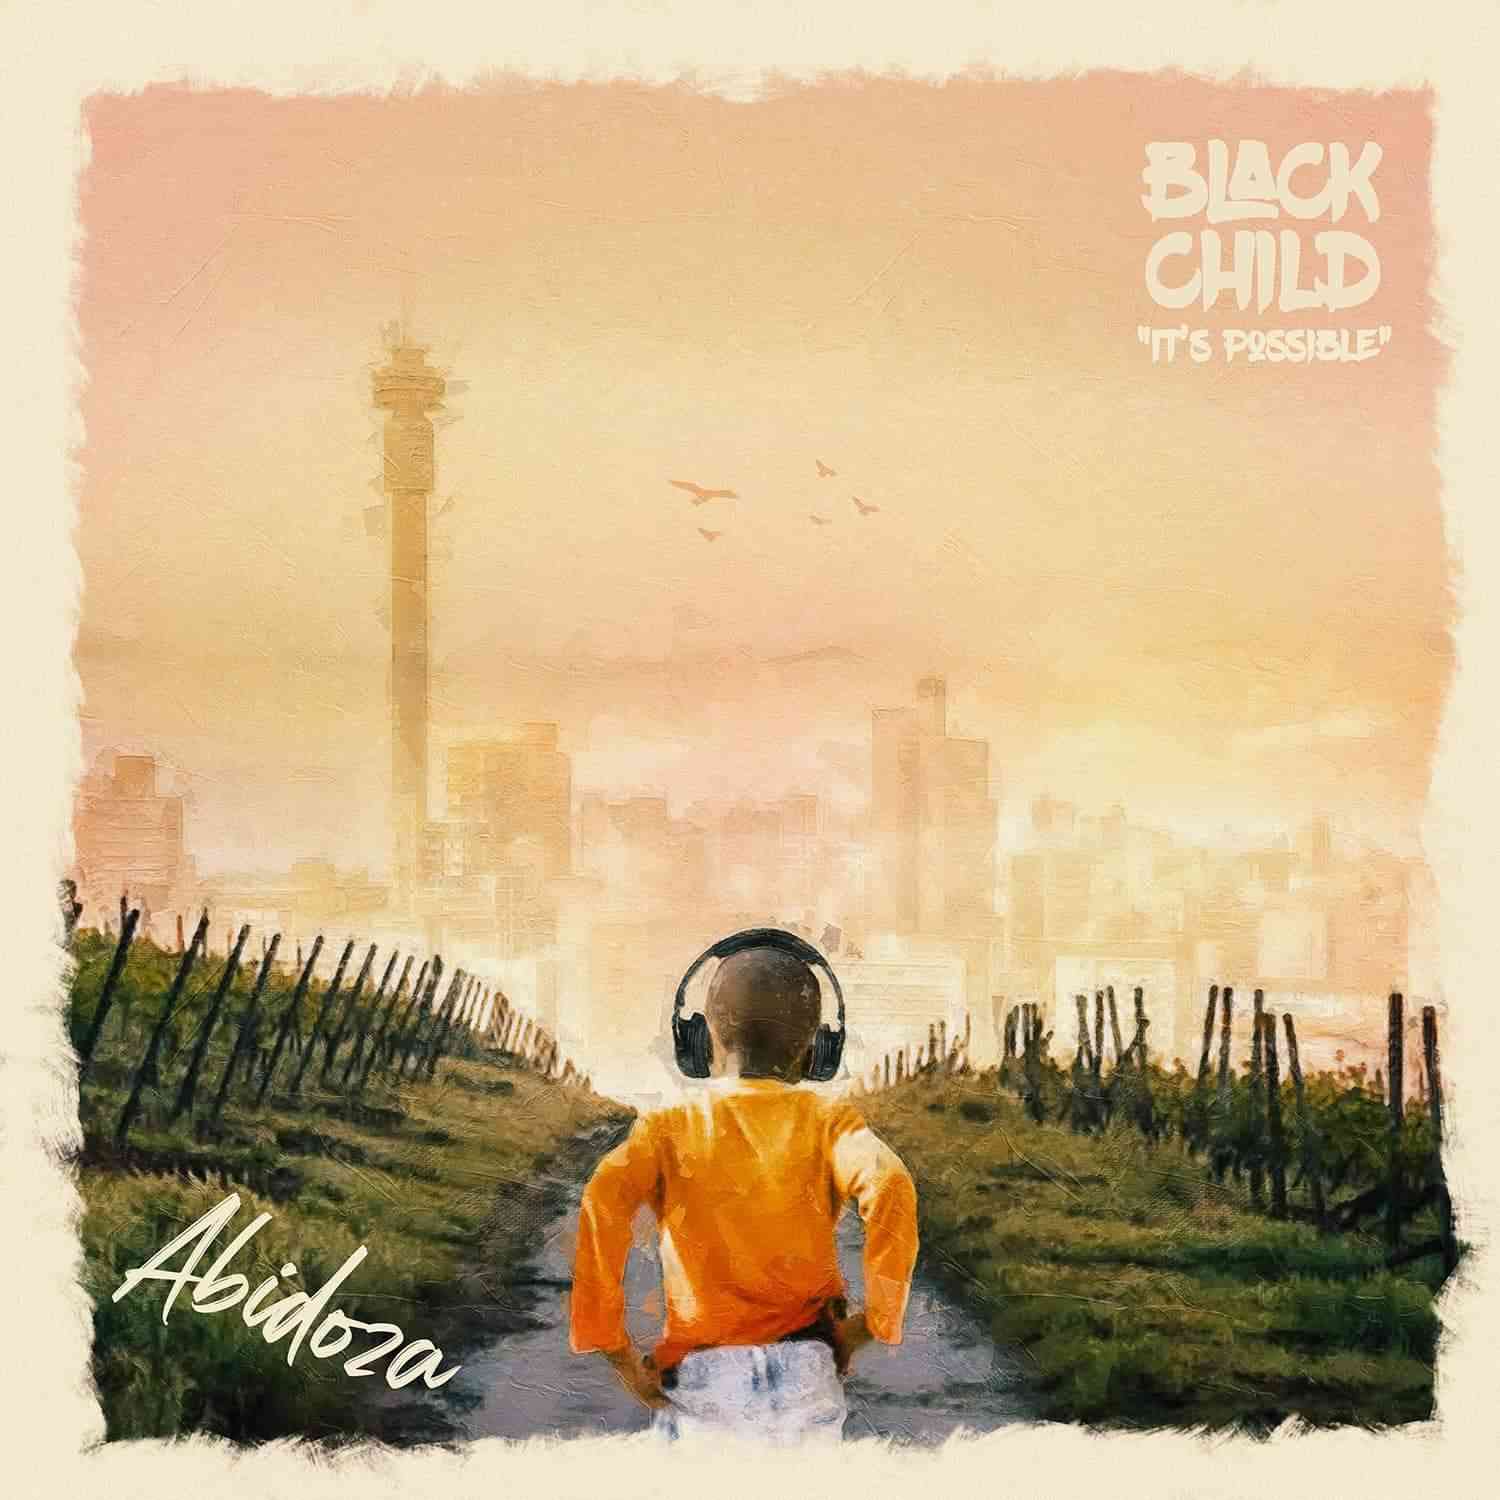 Abidoza Black Child Album (Artwork)